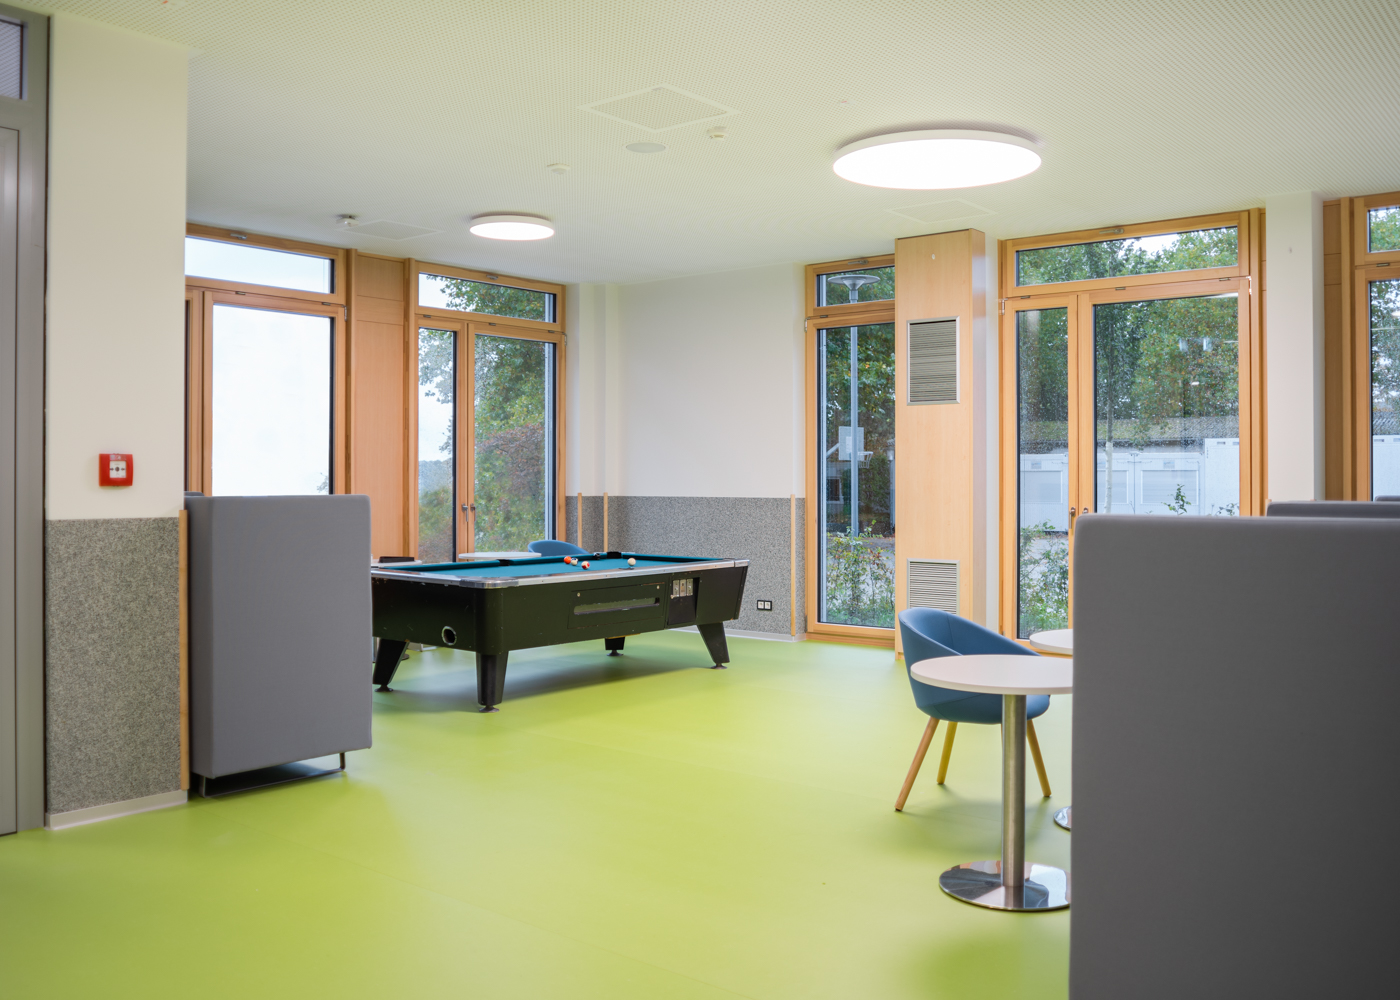 Freizeitbereich mit Billiardtisch im Neubau der Johann-Camenius-Schule in Pinneberg